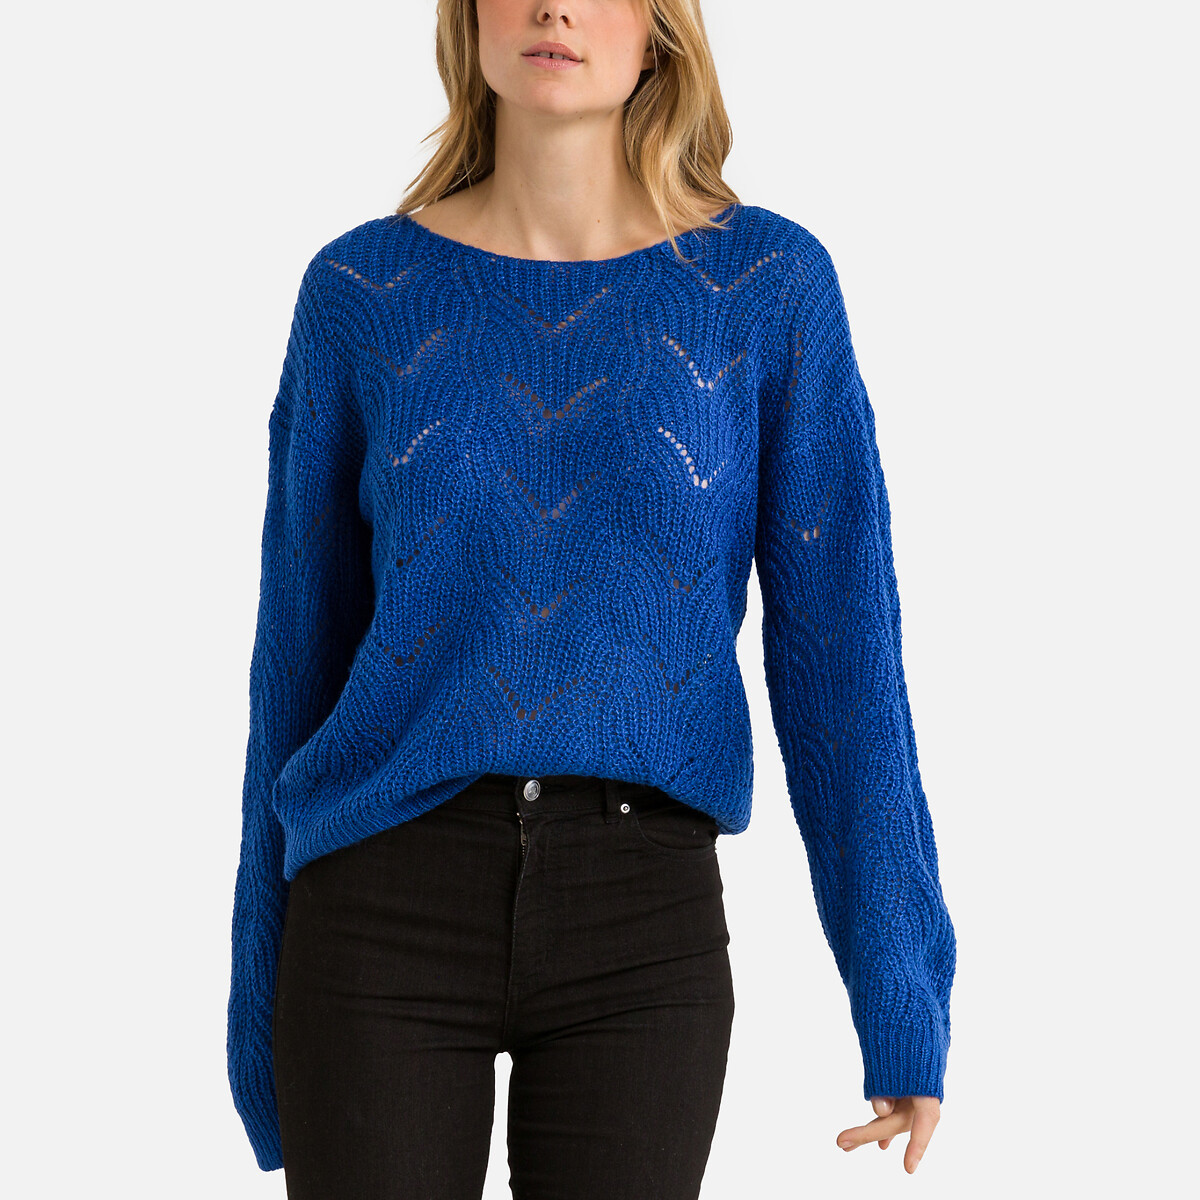 Пуловер С круглым вырезом из ажурного трикотажа S синий LaRedoute, размер S - фото 1